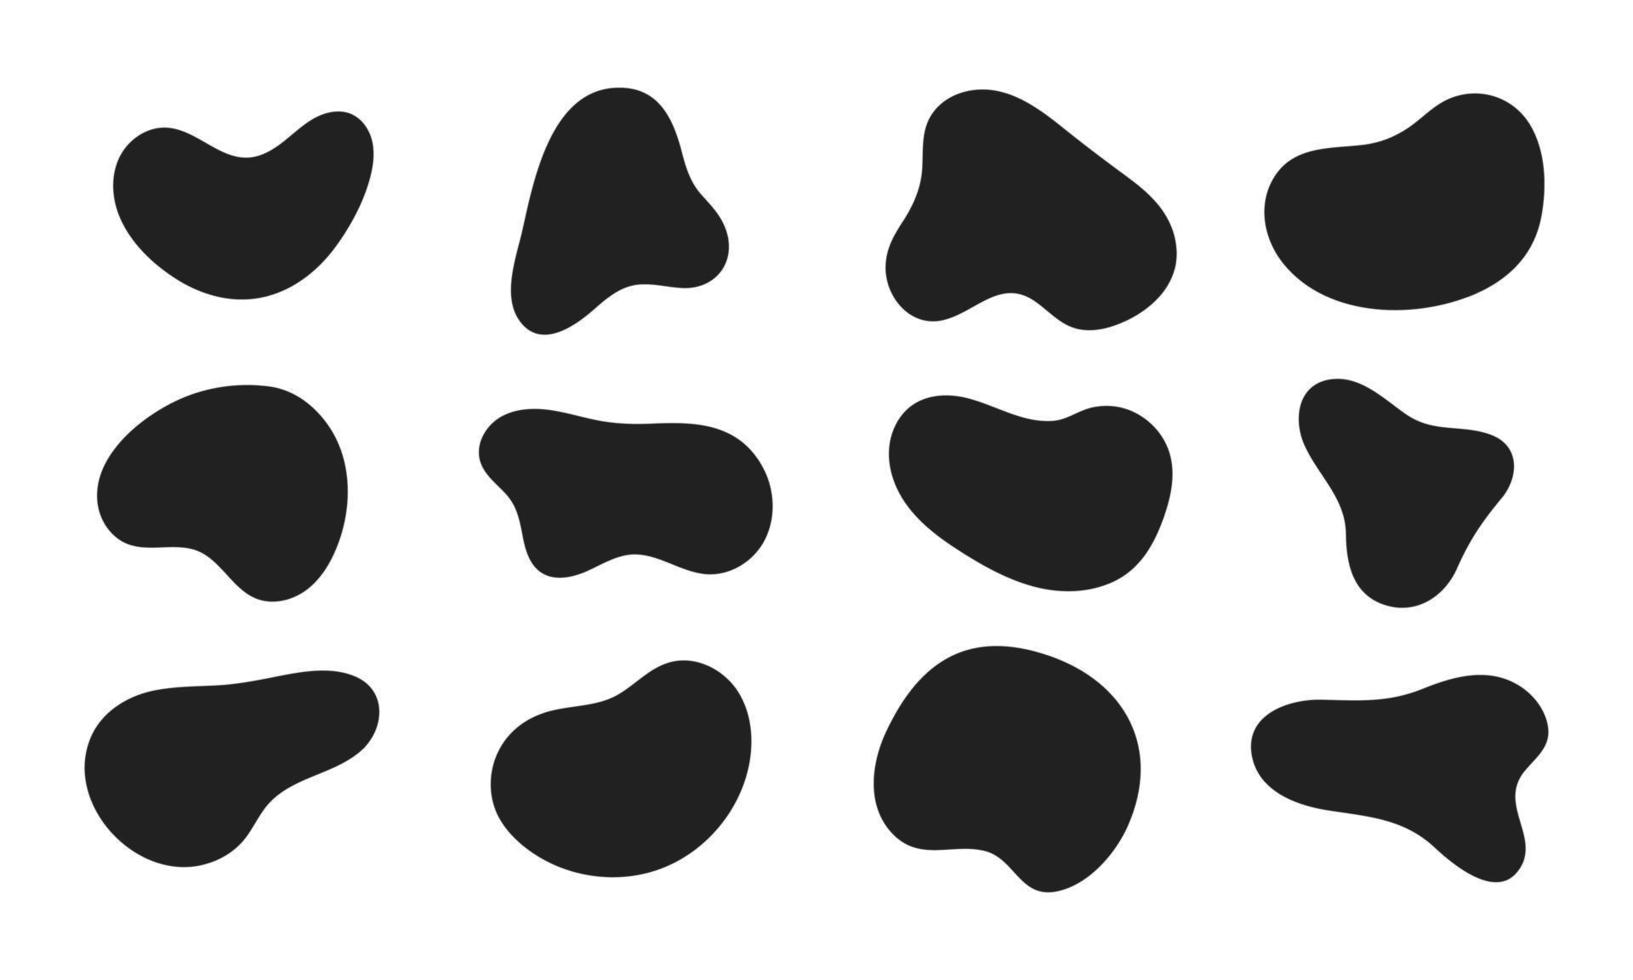 12 moderni elementi astratti a forma di blob liquido irregolare grafica in stile piatto insieme di illustrazioni vettoriali fluide.